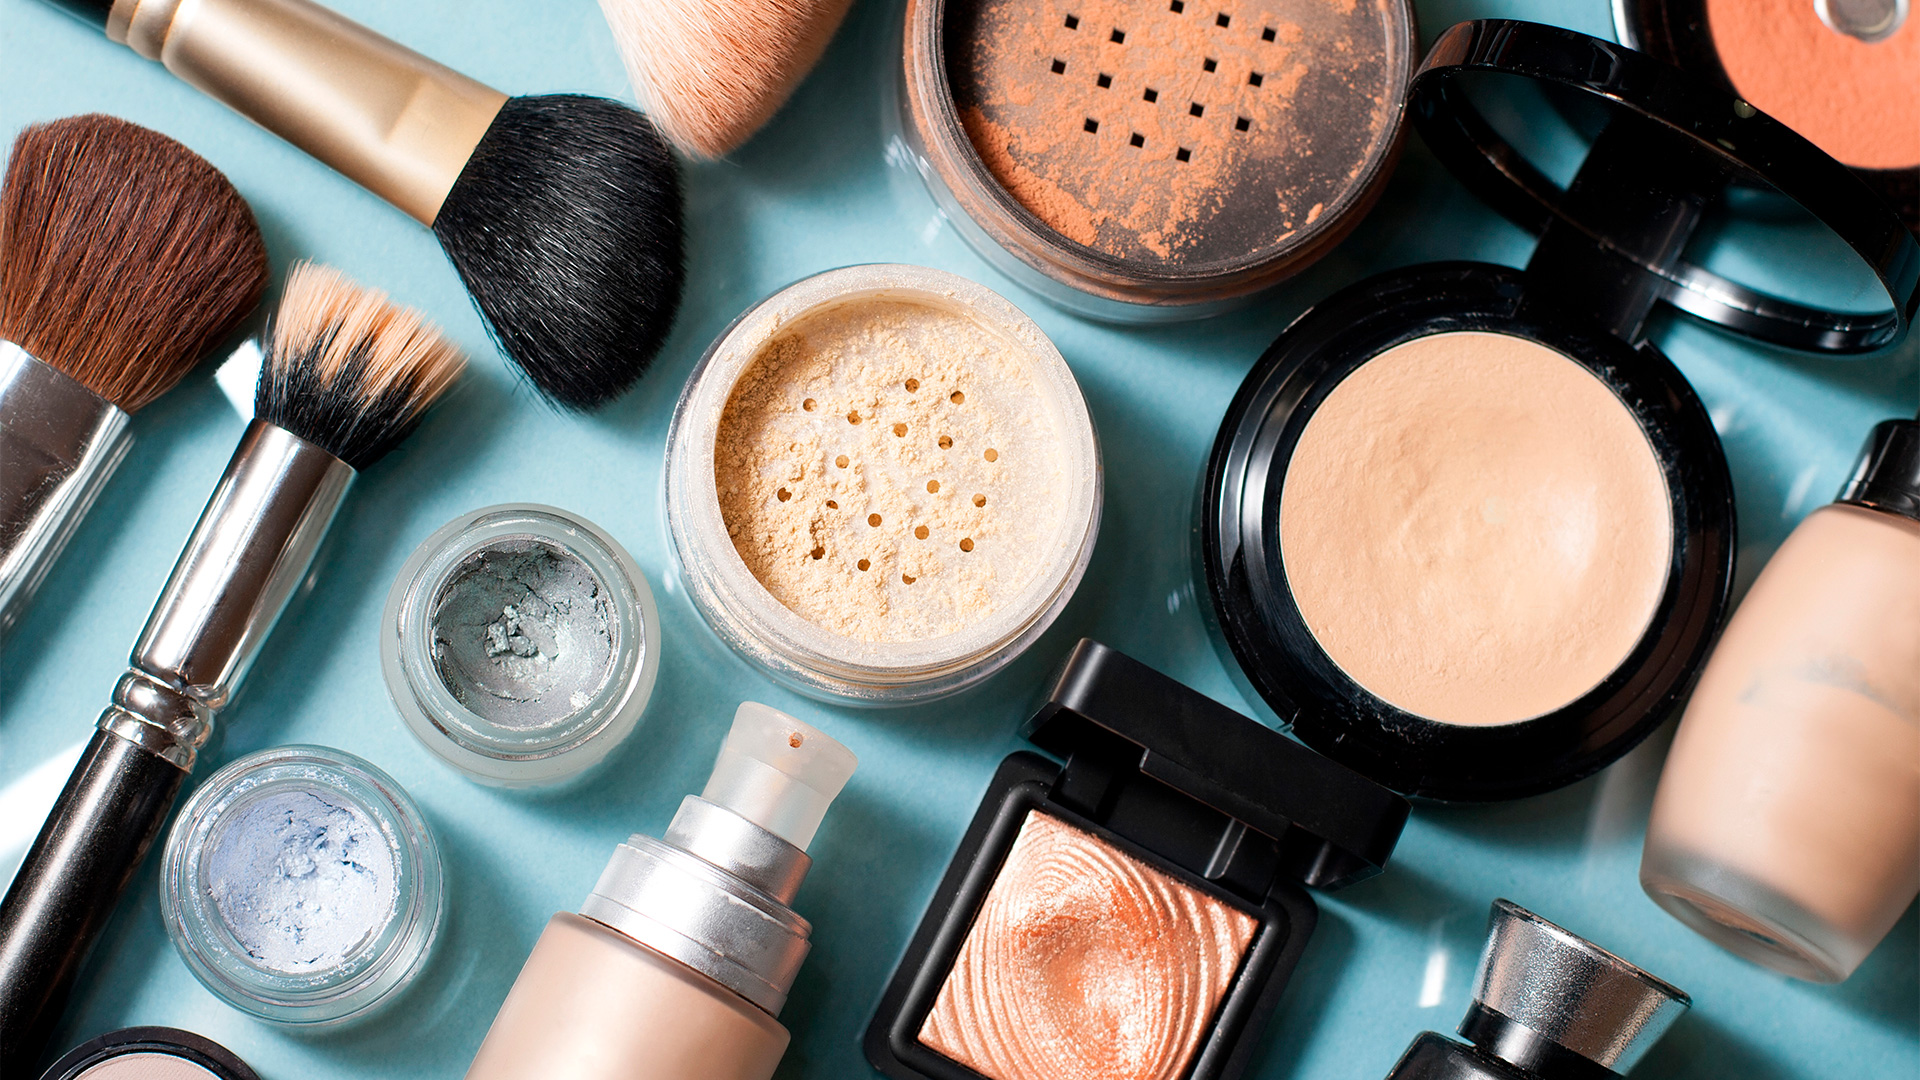 O mercado de cosméticos no Brasil conquistou um ótimo crescimento em 2019, atingindo a marca de 10,6% de aumento nas vendas já no primeiro trimestre do an, diretamente relacionado ao aumento de crédito no Brasil